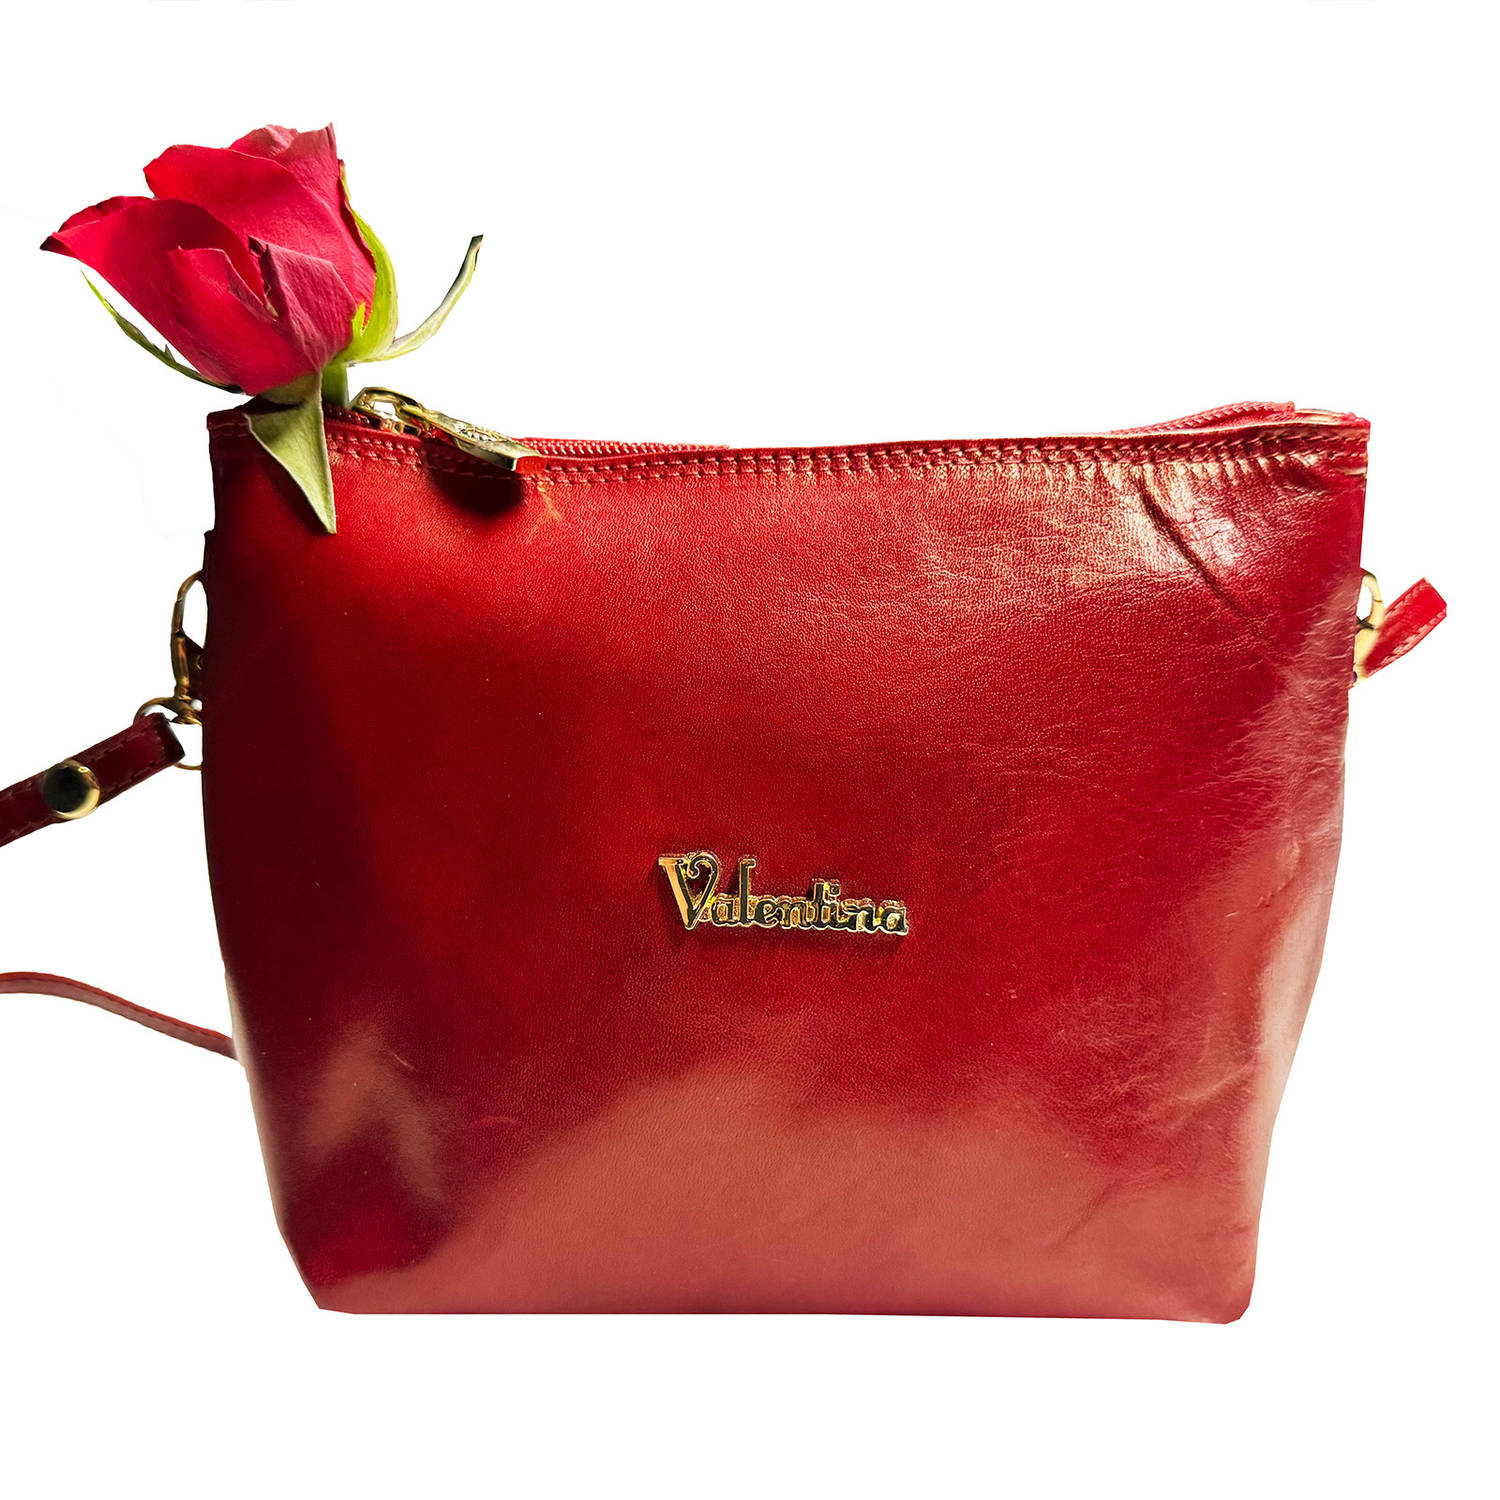 Echt Lederen Klassieke Crossbody Tas voor Dames | Ideaal Rode Sintcadeau voor Dames | Limited Edition in Damestassen Outlet